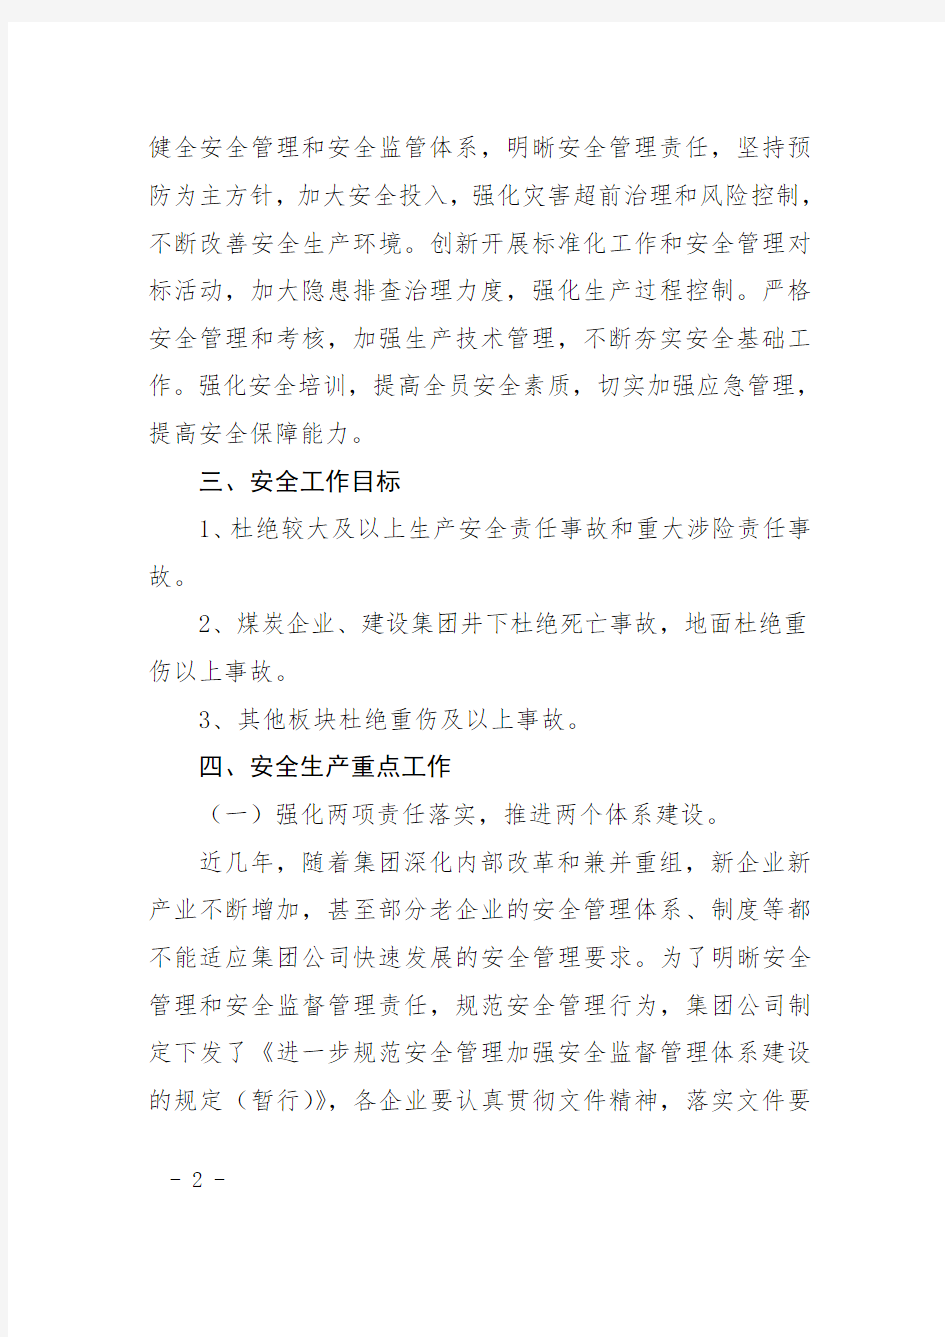 2.陕煤化集团关于加强2013年安全生产工作的决定